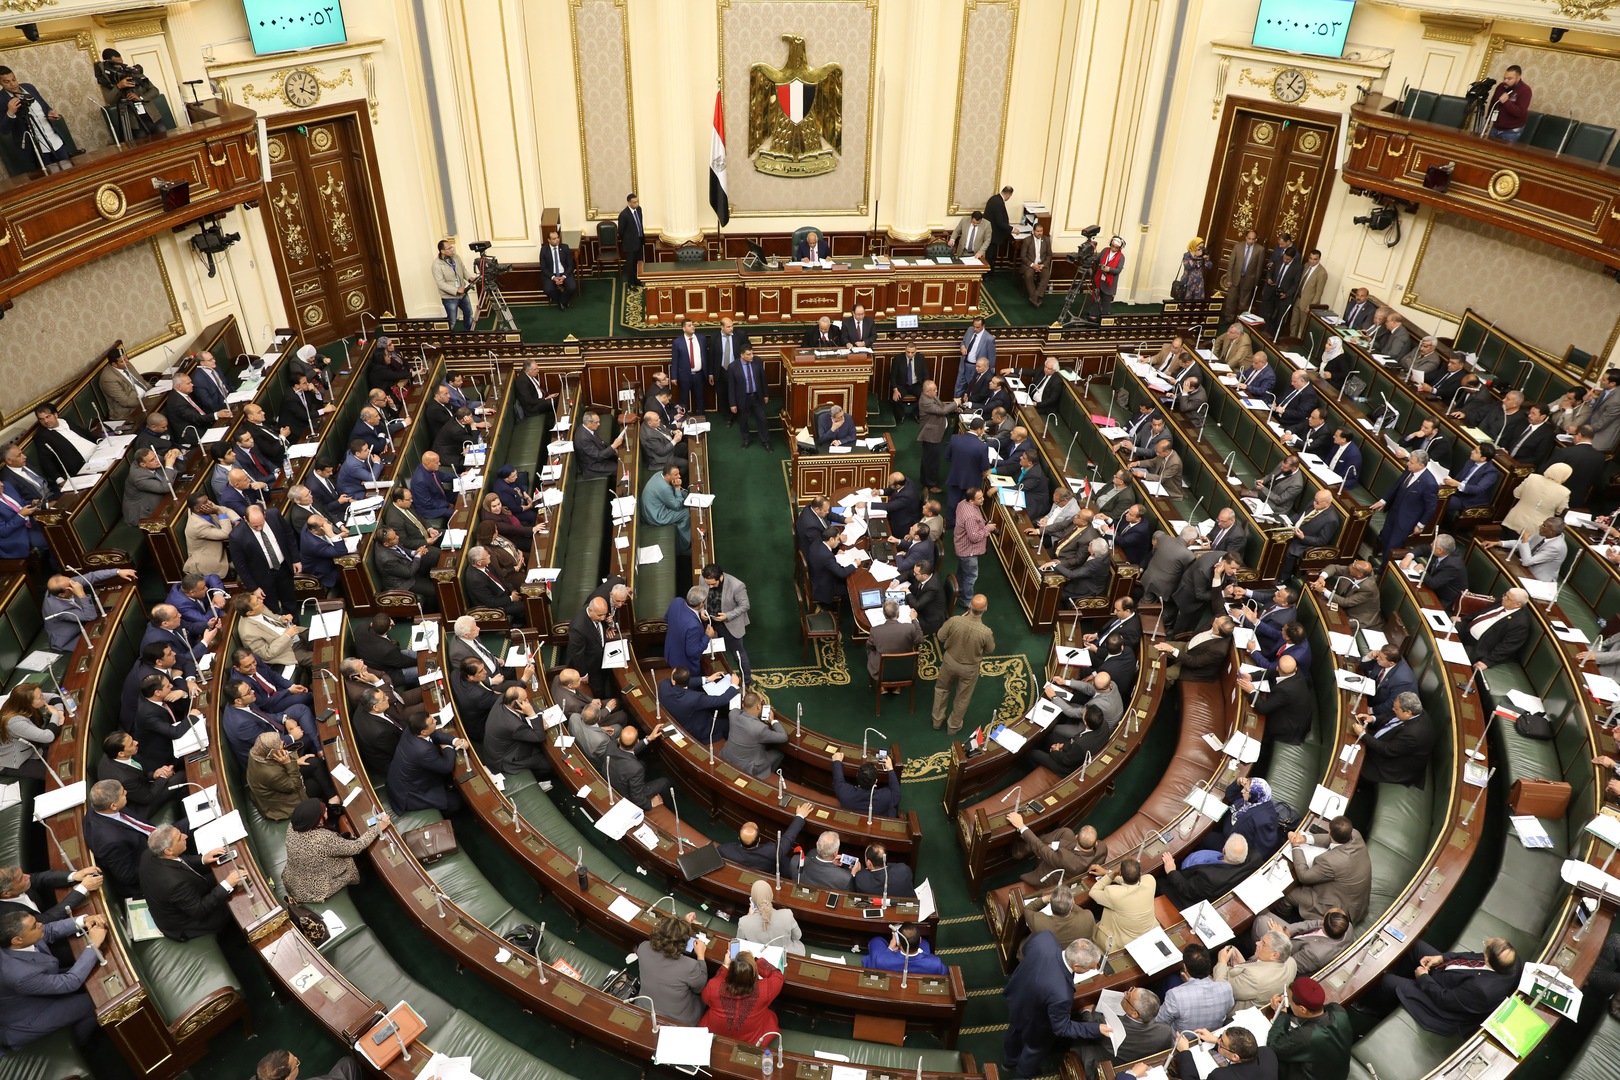 مجلس النواب المصري يوافق على قانون يمنع ترشح الضباط للرئاسة إلا بشروط